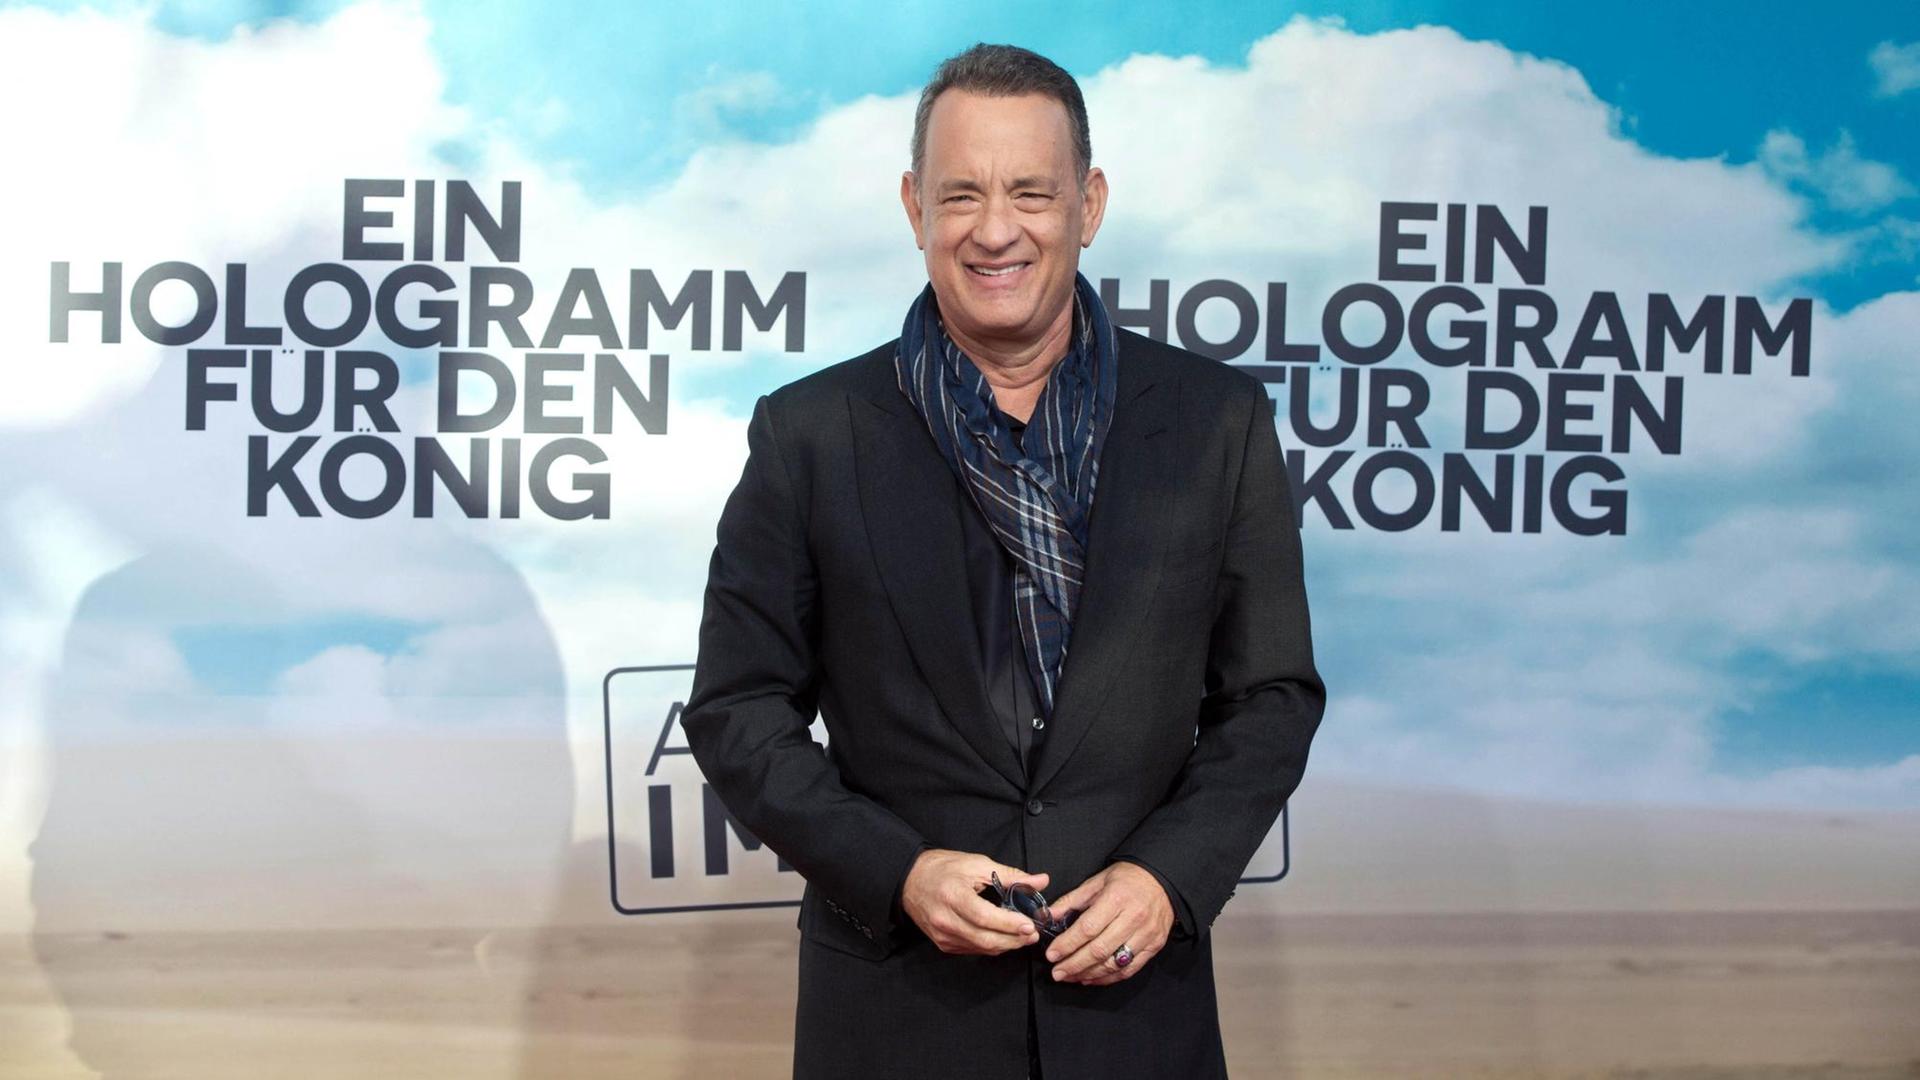 Der Schauspieler Tom Hanks kommt zur Europapremiere des Films "Ein Hologramm für den König" in Berlin.